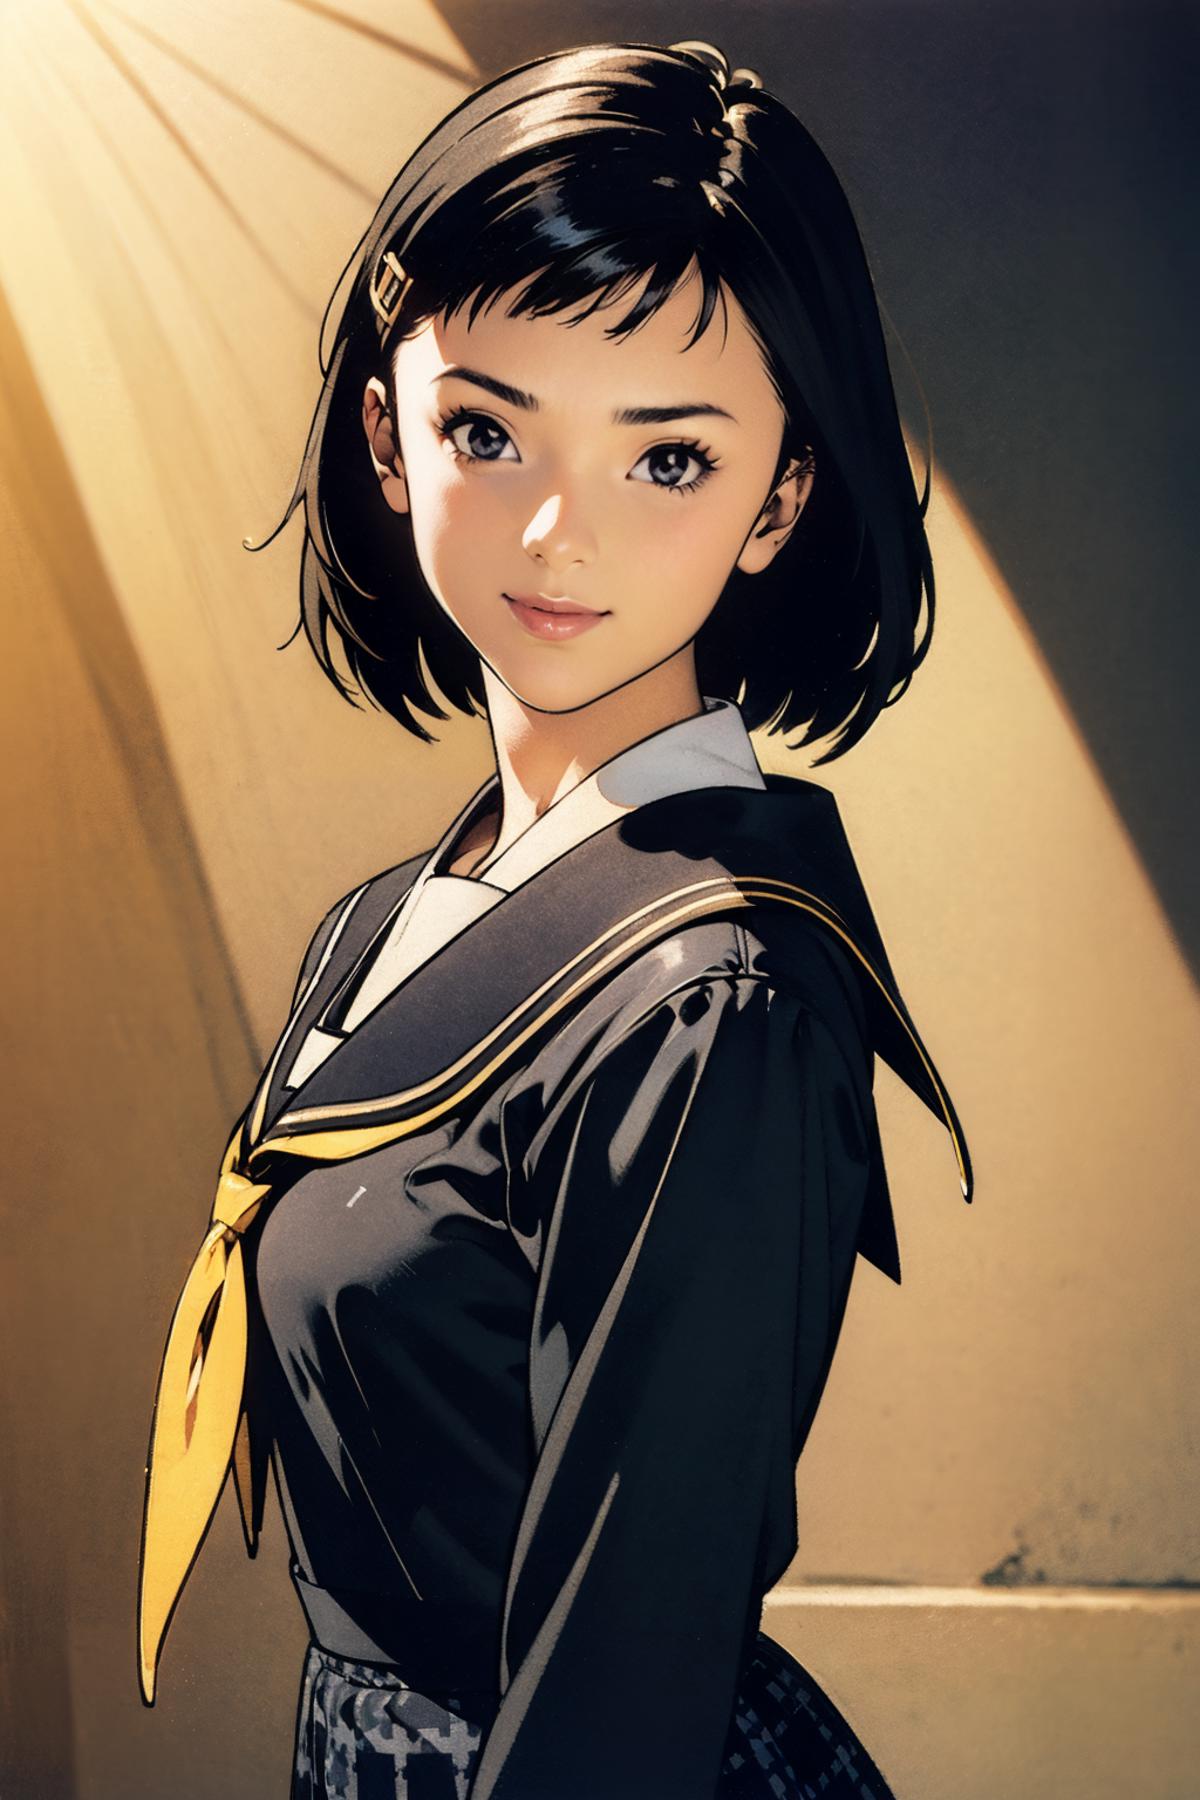 Yumi Ozawa - Persona 4 (小沢結実、ペルソナ4) image by seventh_arrow892